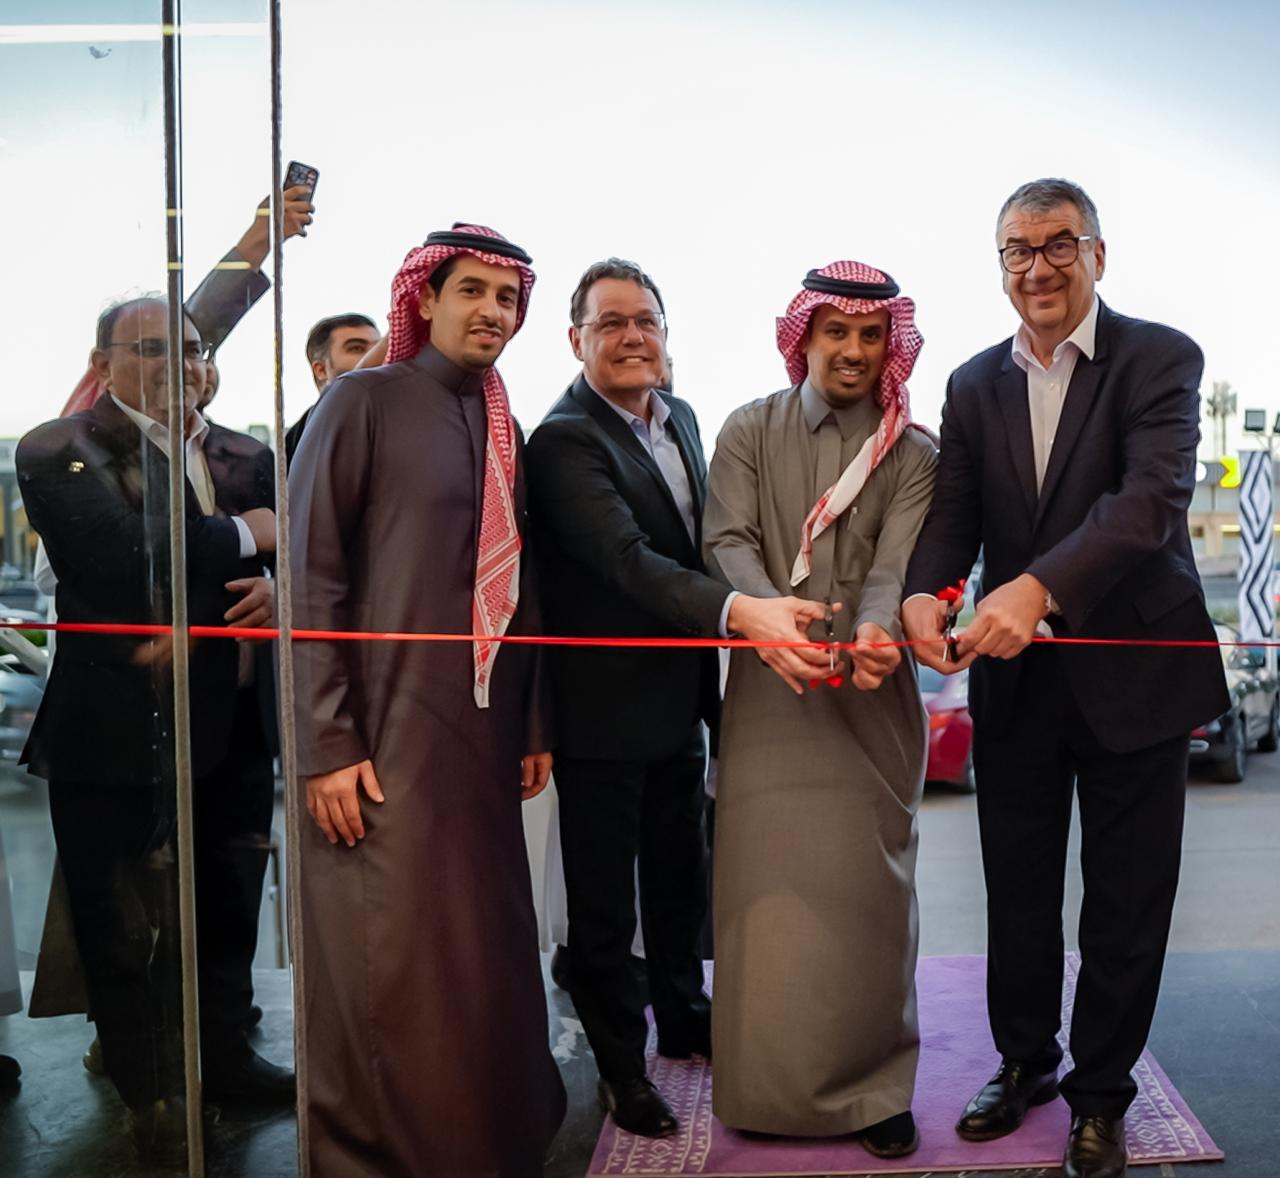 الوعلان للتجارة تفتتح مركزاً متكاملاً لعلامة رينو في الرياض، وتعلن عن خطط لافتتاح مراكز إضافية في جدة والدمام  1